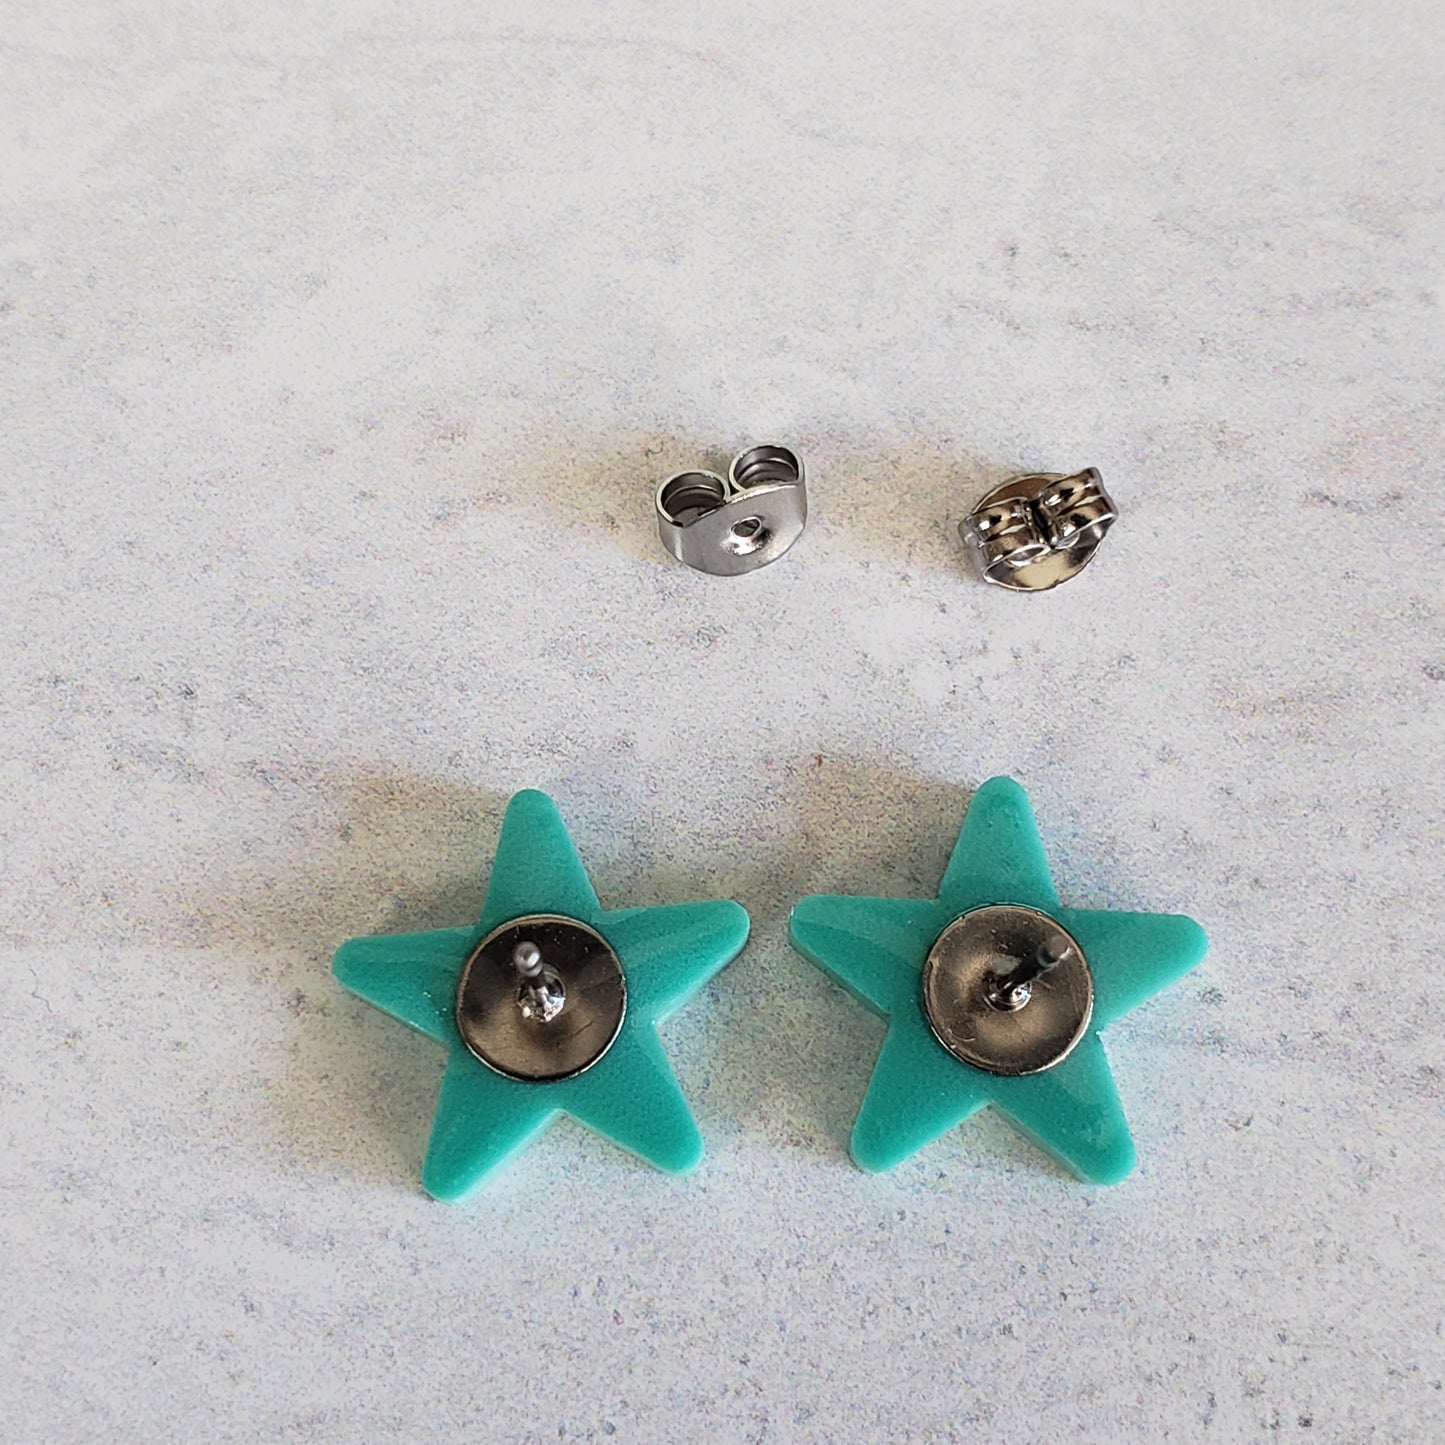 Backside of matte mint green star stud earrings showing posts